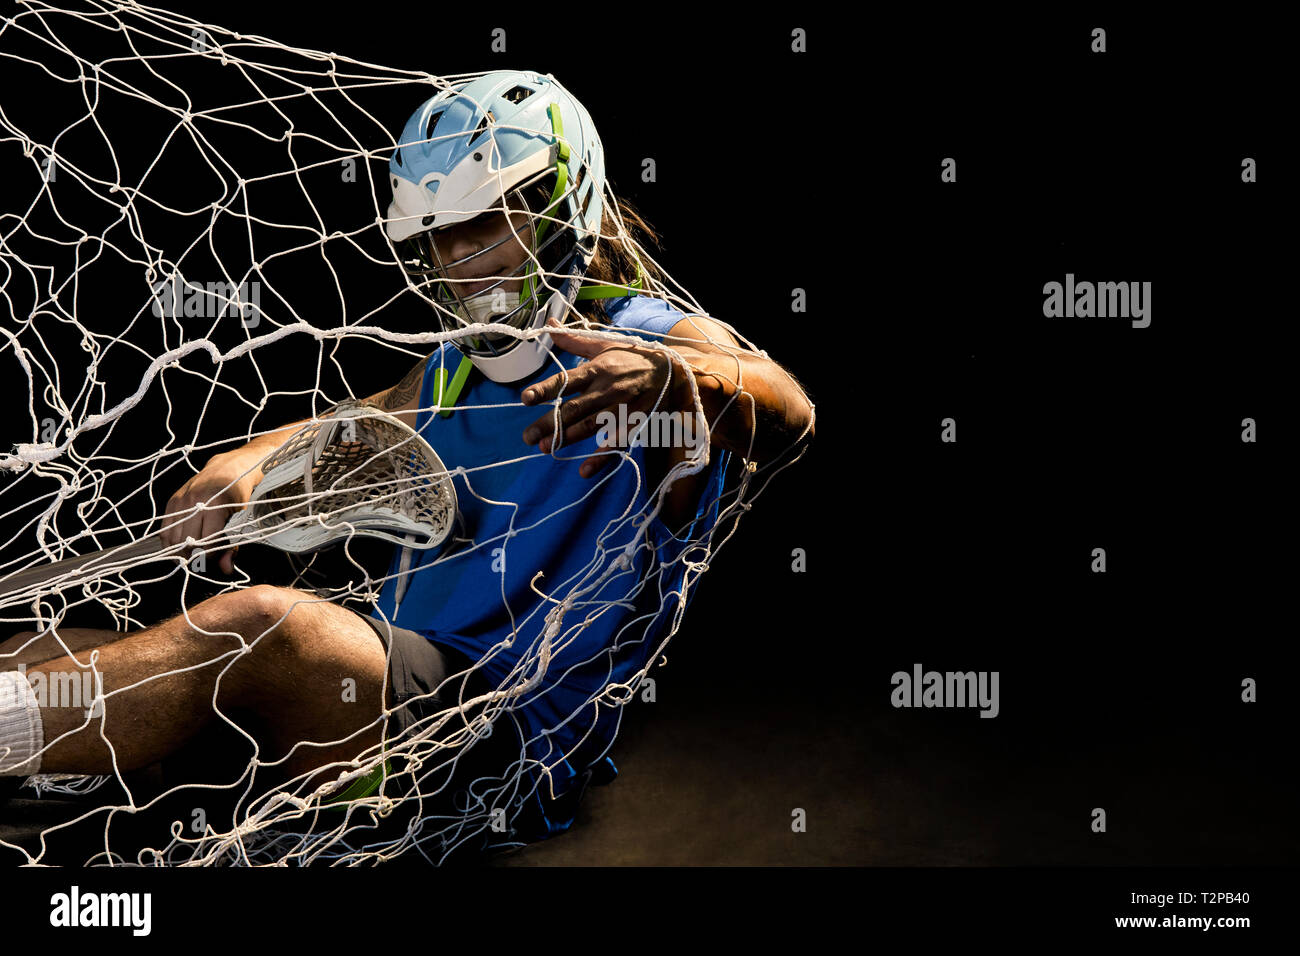 Giovane maschio lacrosse player in azione di cadere nella rete, su sfondo nero Foto Stock